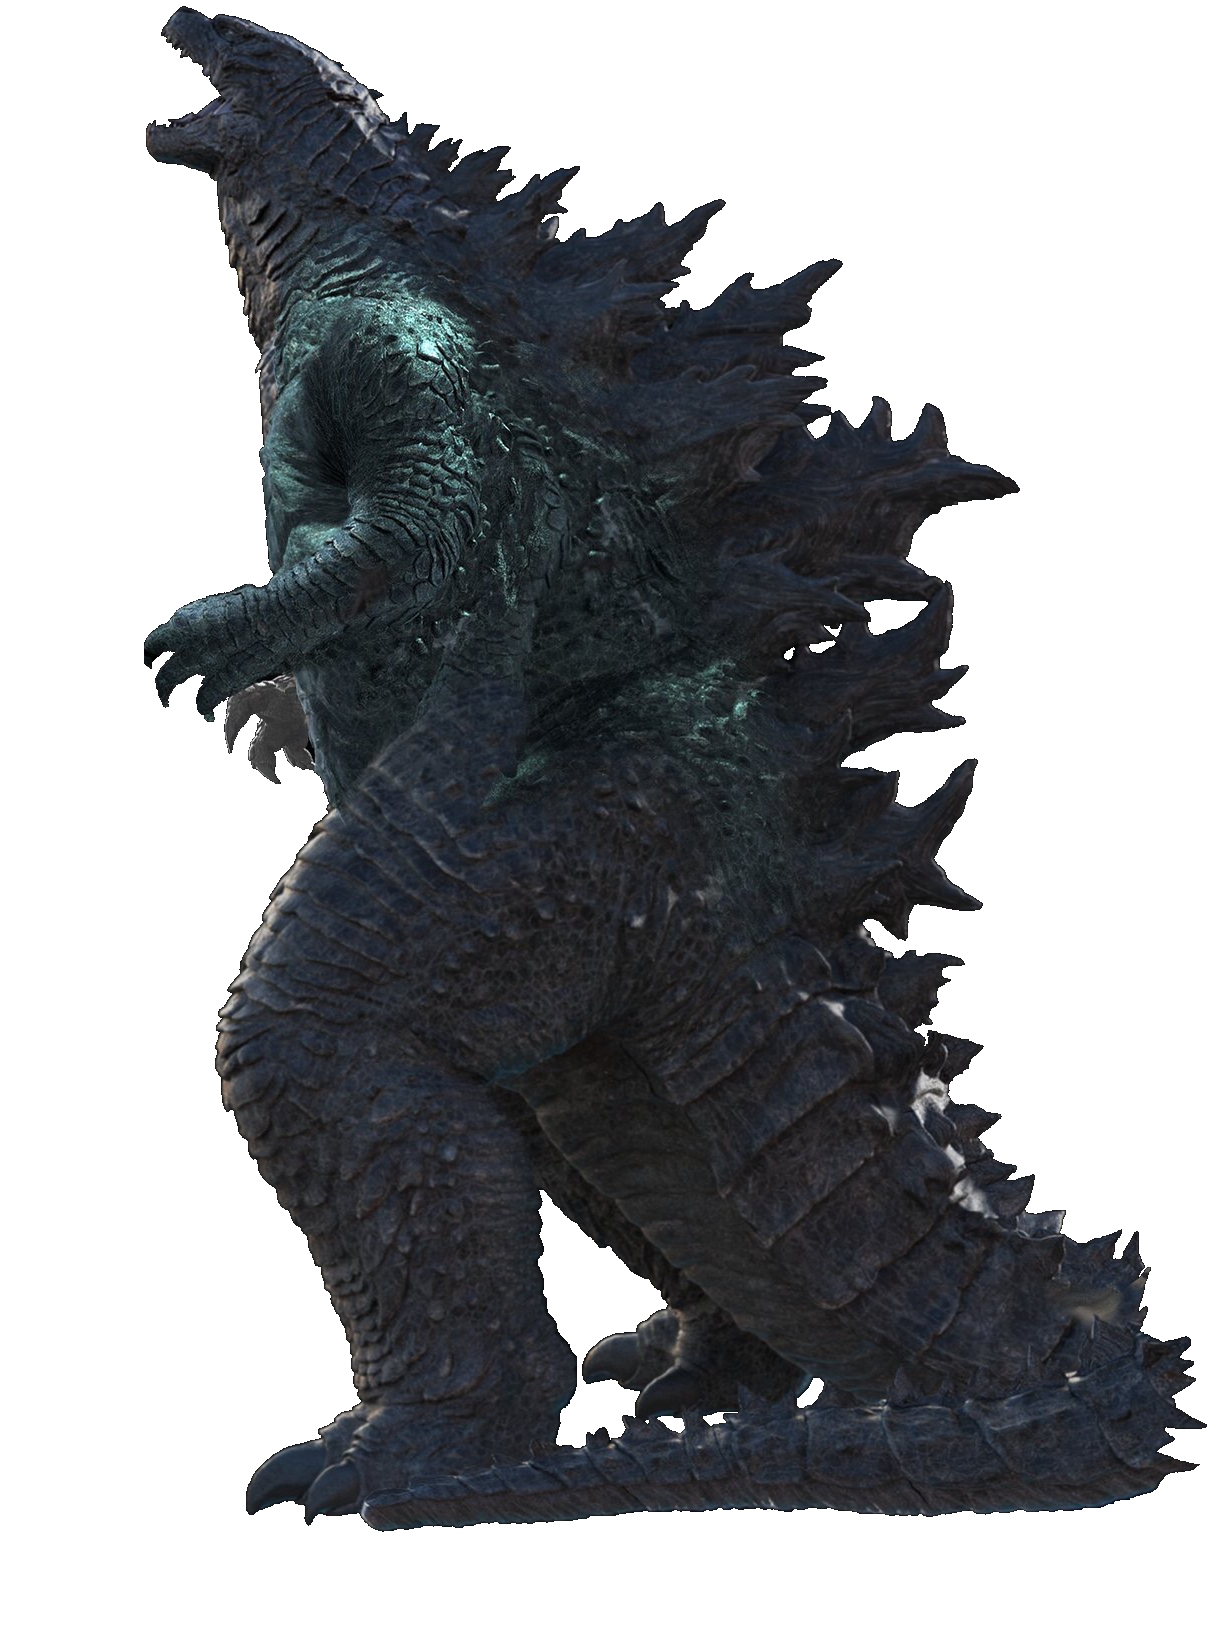 Các fan cuồng Godzilla nhất định không thể bỏ qua bộ sưu tập hình ảnh về Godzilla PNG này. Với các hình ảnh đầy uy lực và đầy sức mạnh này, bạn sẽ được thỏa mãn sự yêu thích với một trong những quái vật kinh điển nhất của lịch sử điện ảnh.